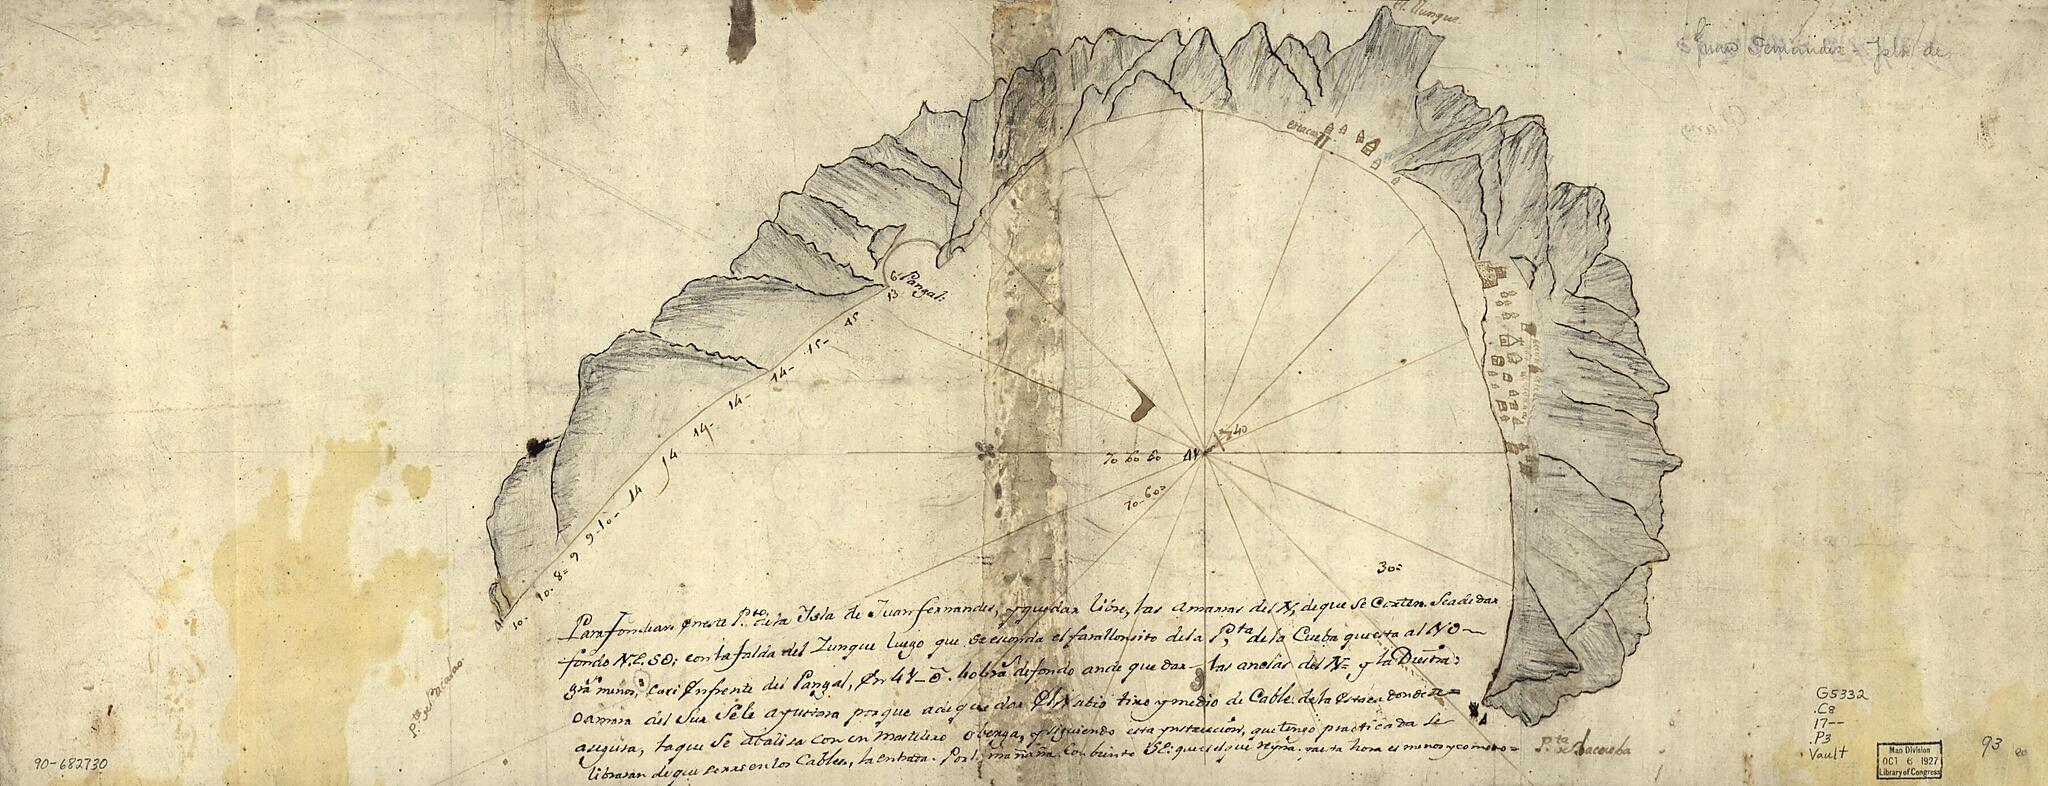 This old map of Para Fondear En Este Pte. De La Ysla De Juan Fernandes Y Que Dar Libre, Vas Amanzar Del N, De Que Se Corten  from 1700 was created by  in 1700